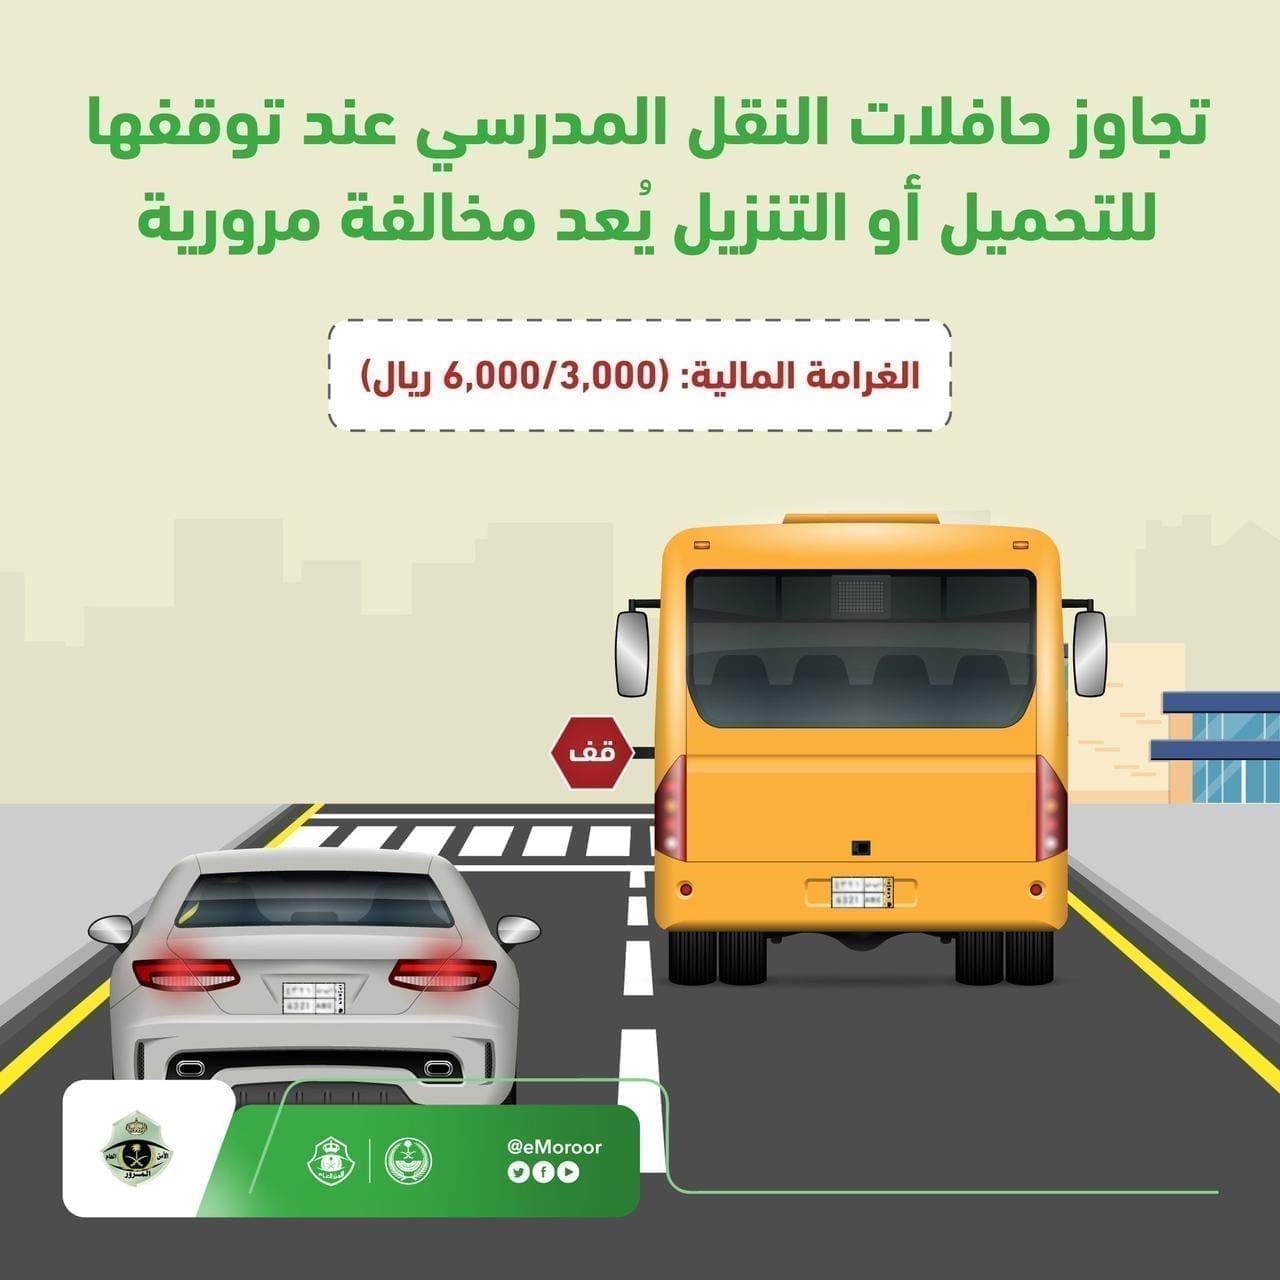 غرامة مخالفة تجاوز حافلات النقل المدرسي عند توقفها